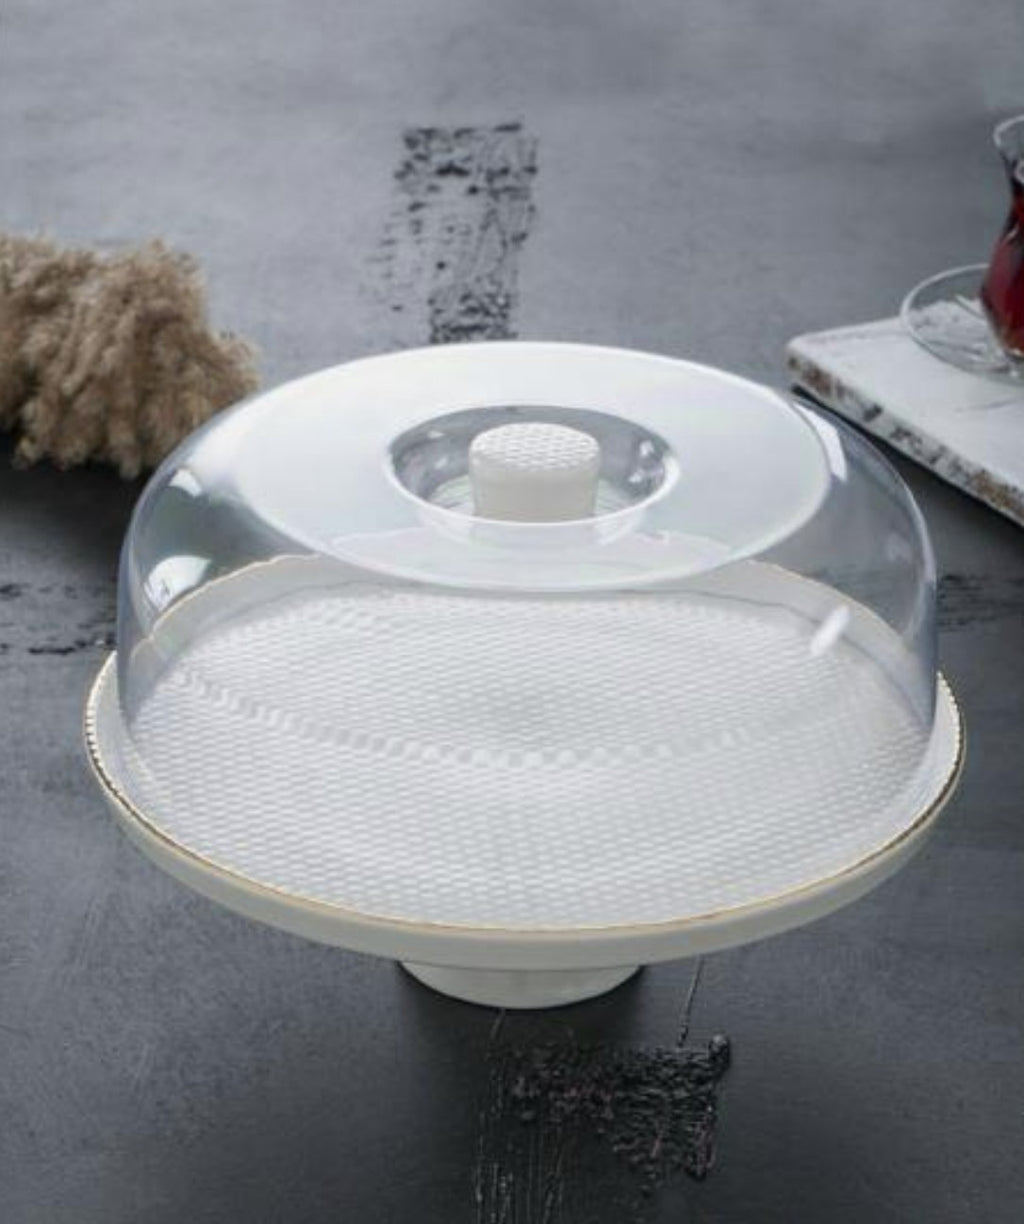 Présentoire à gateau en céramique avec dome en verre blanc